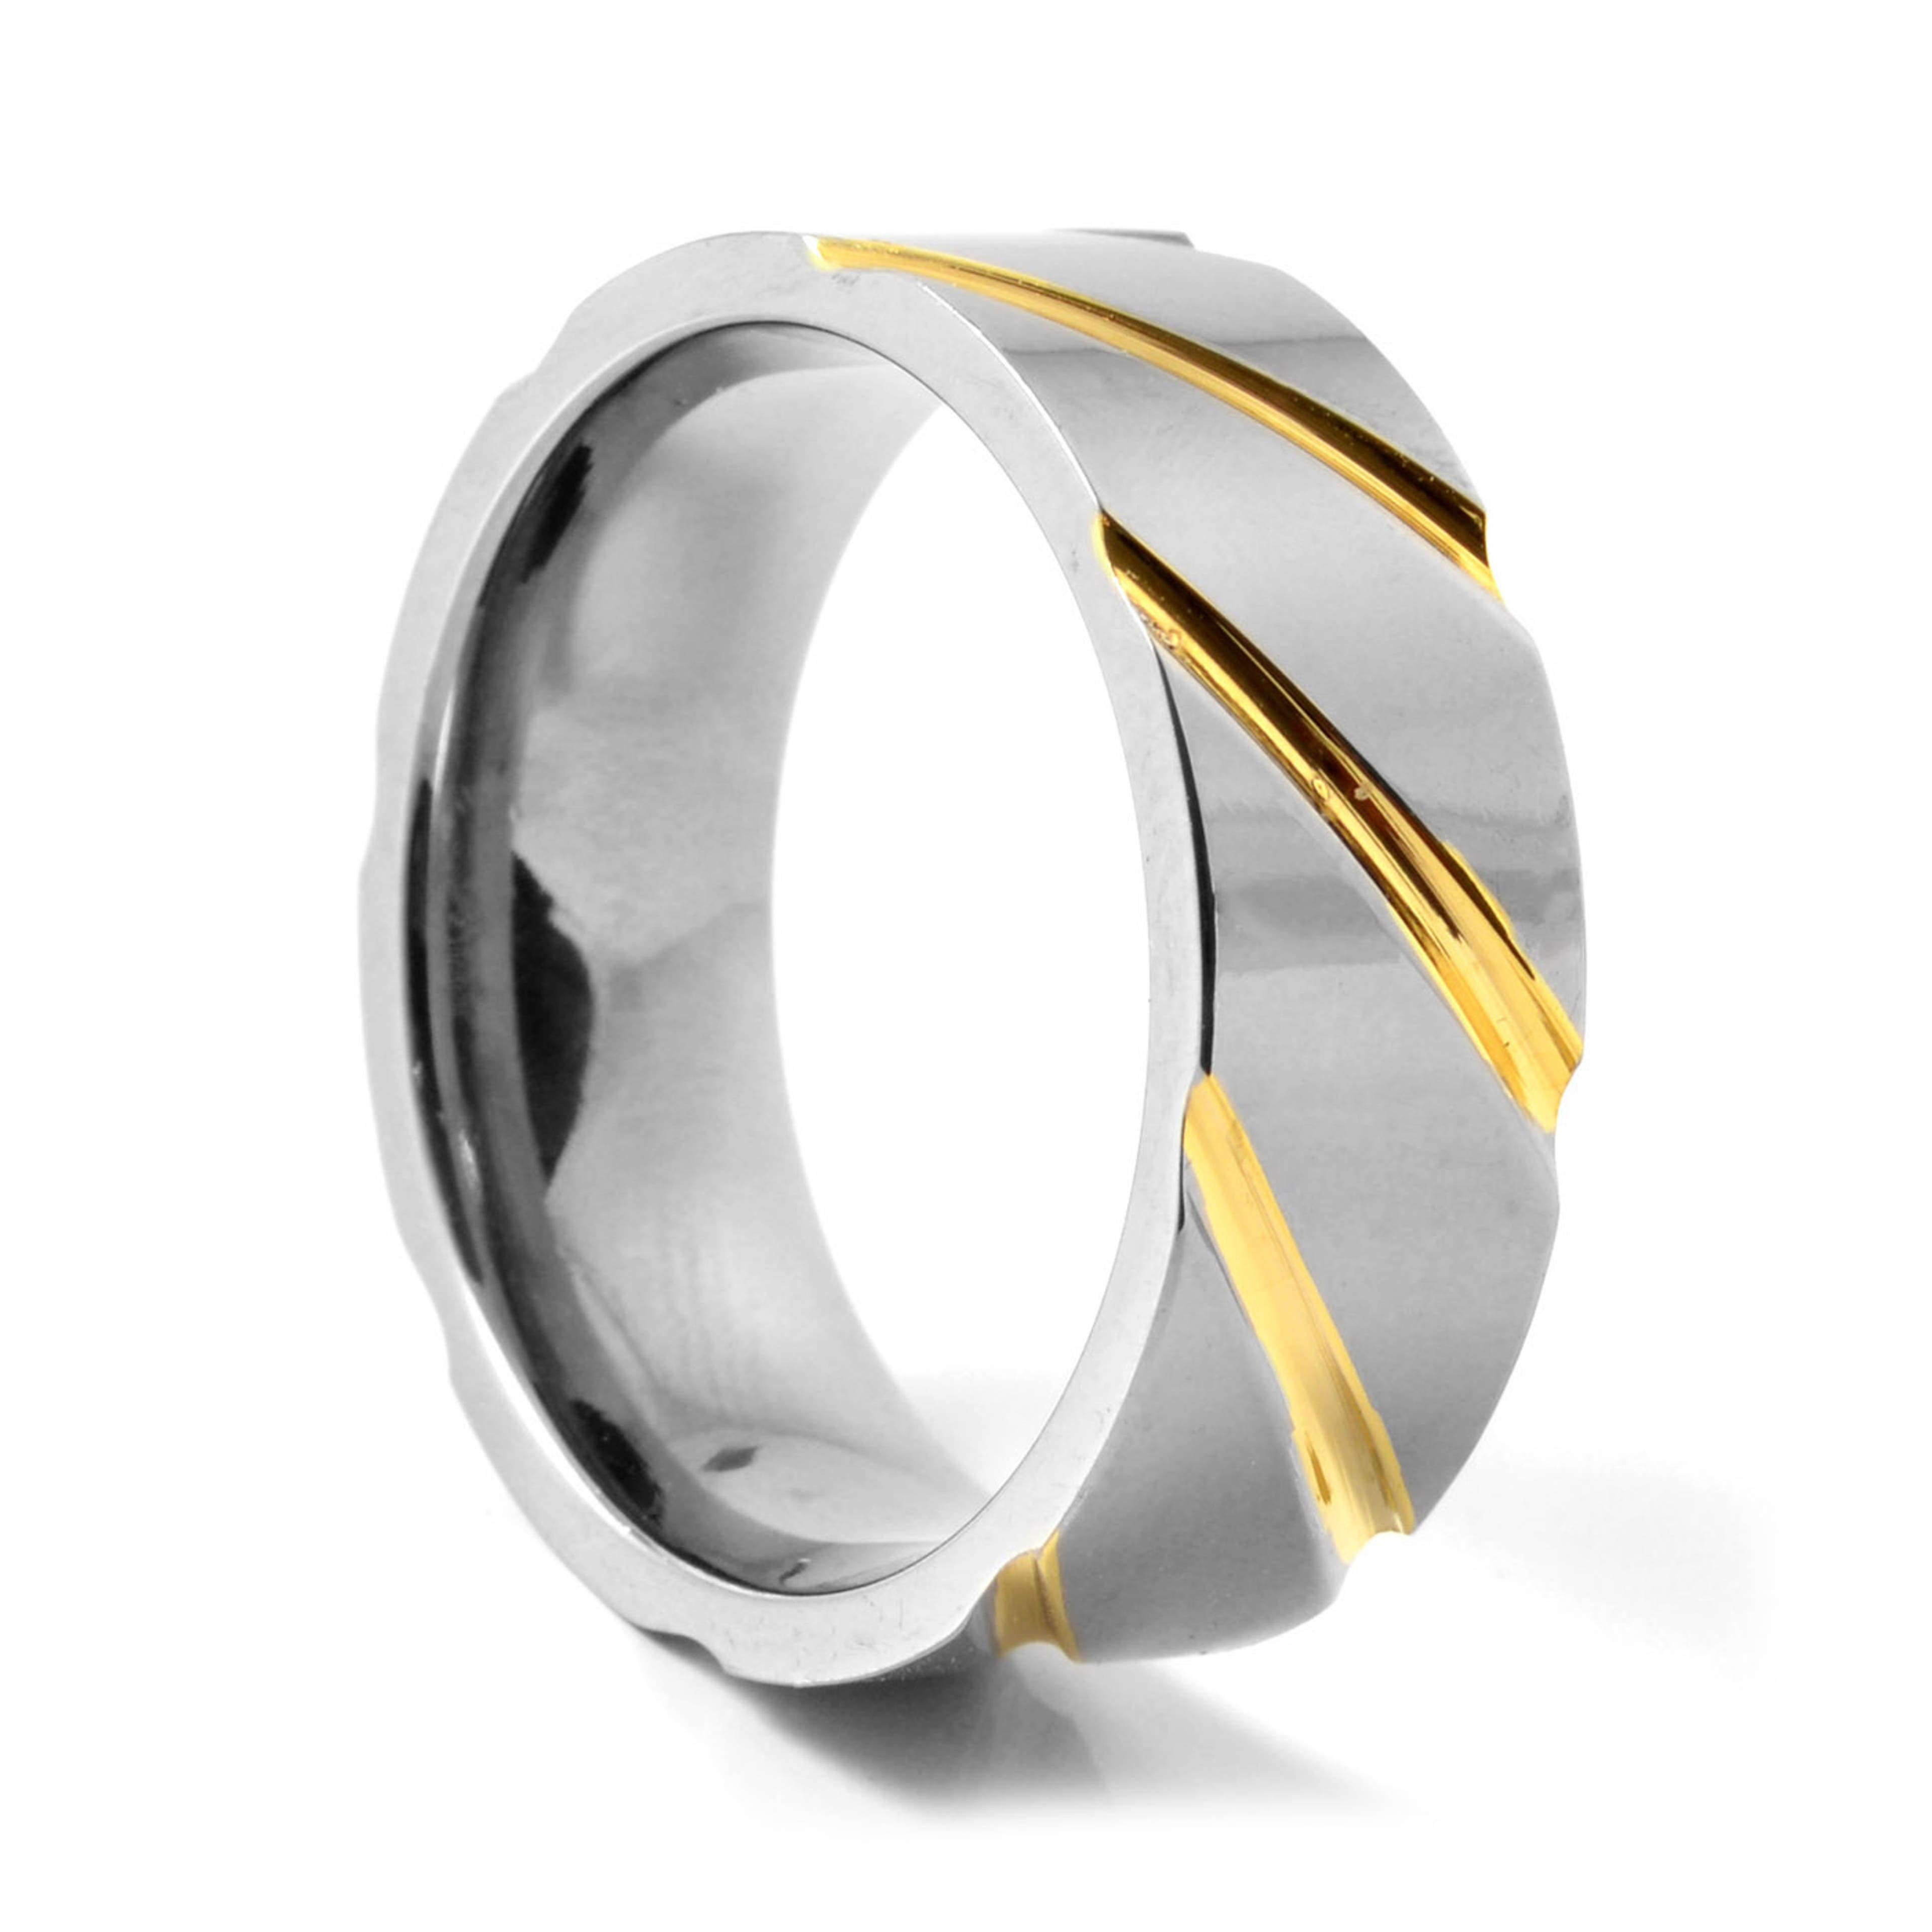 Inel unic din titan cu nuanțe argintii și aurii